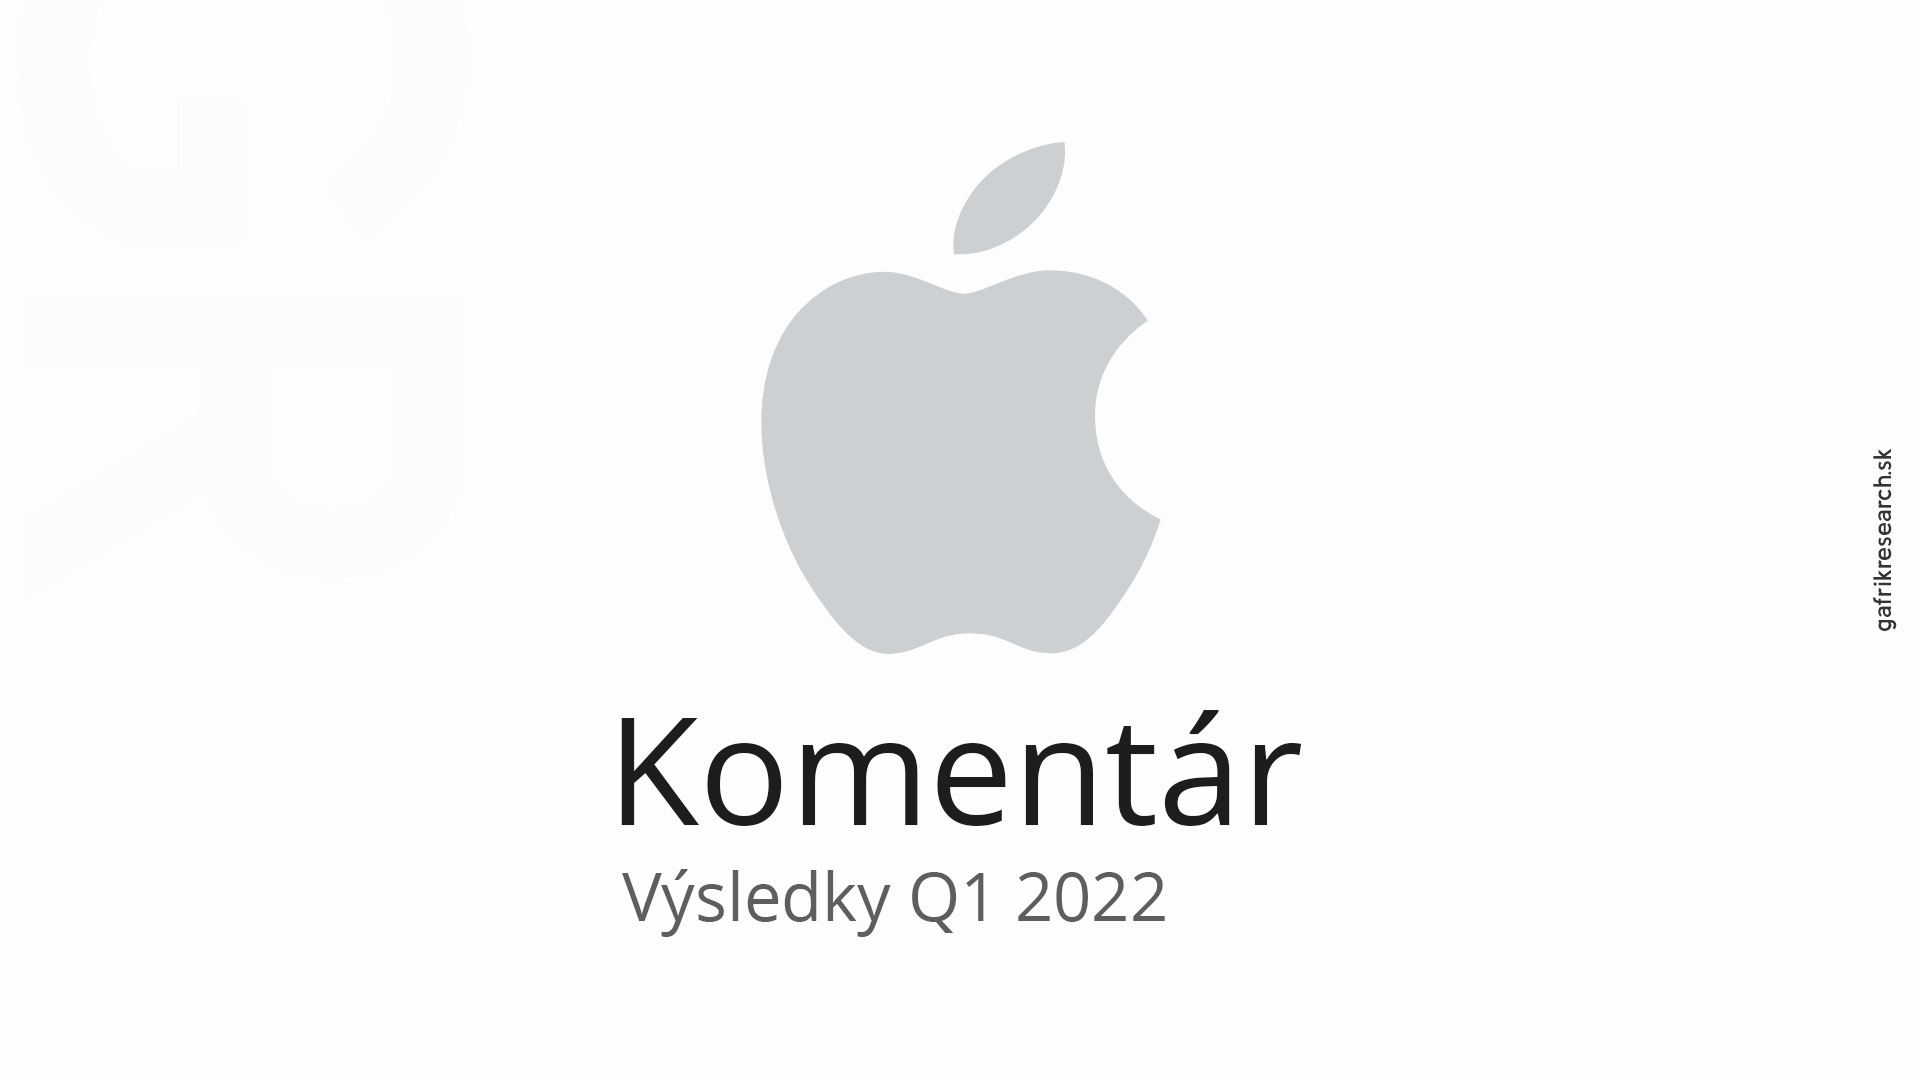 Komentár: Rekordné kvartálne výsledky Apple za Q1 roka 2022